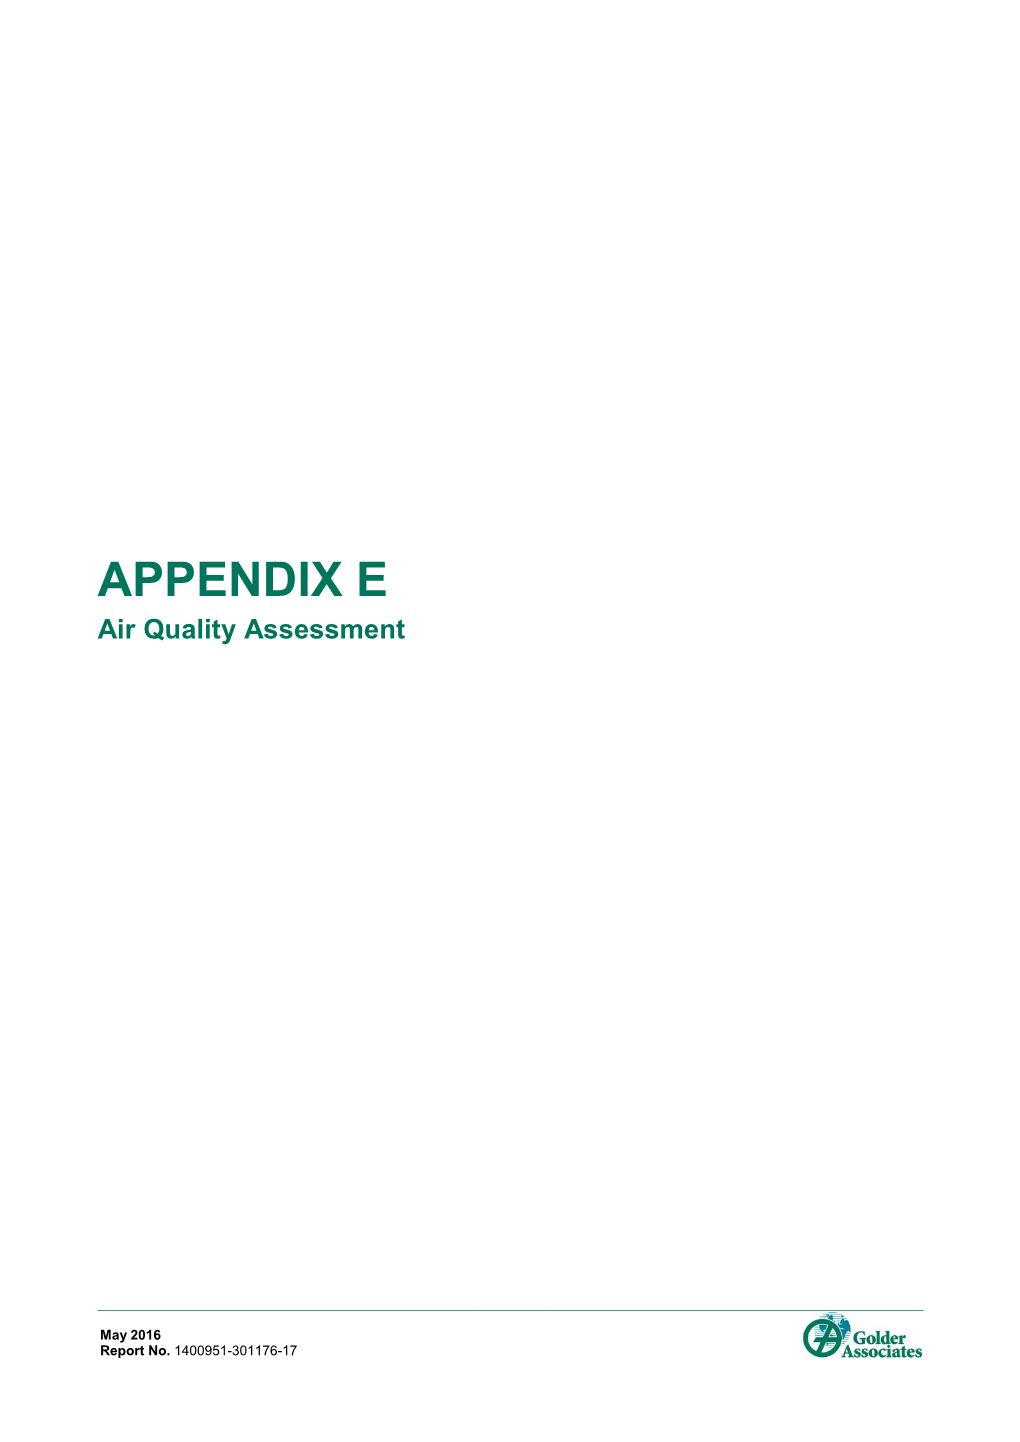 APPENDIX E Air Quality Assessment